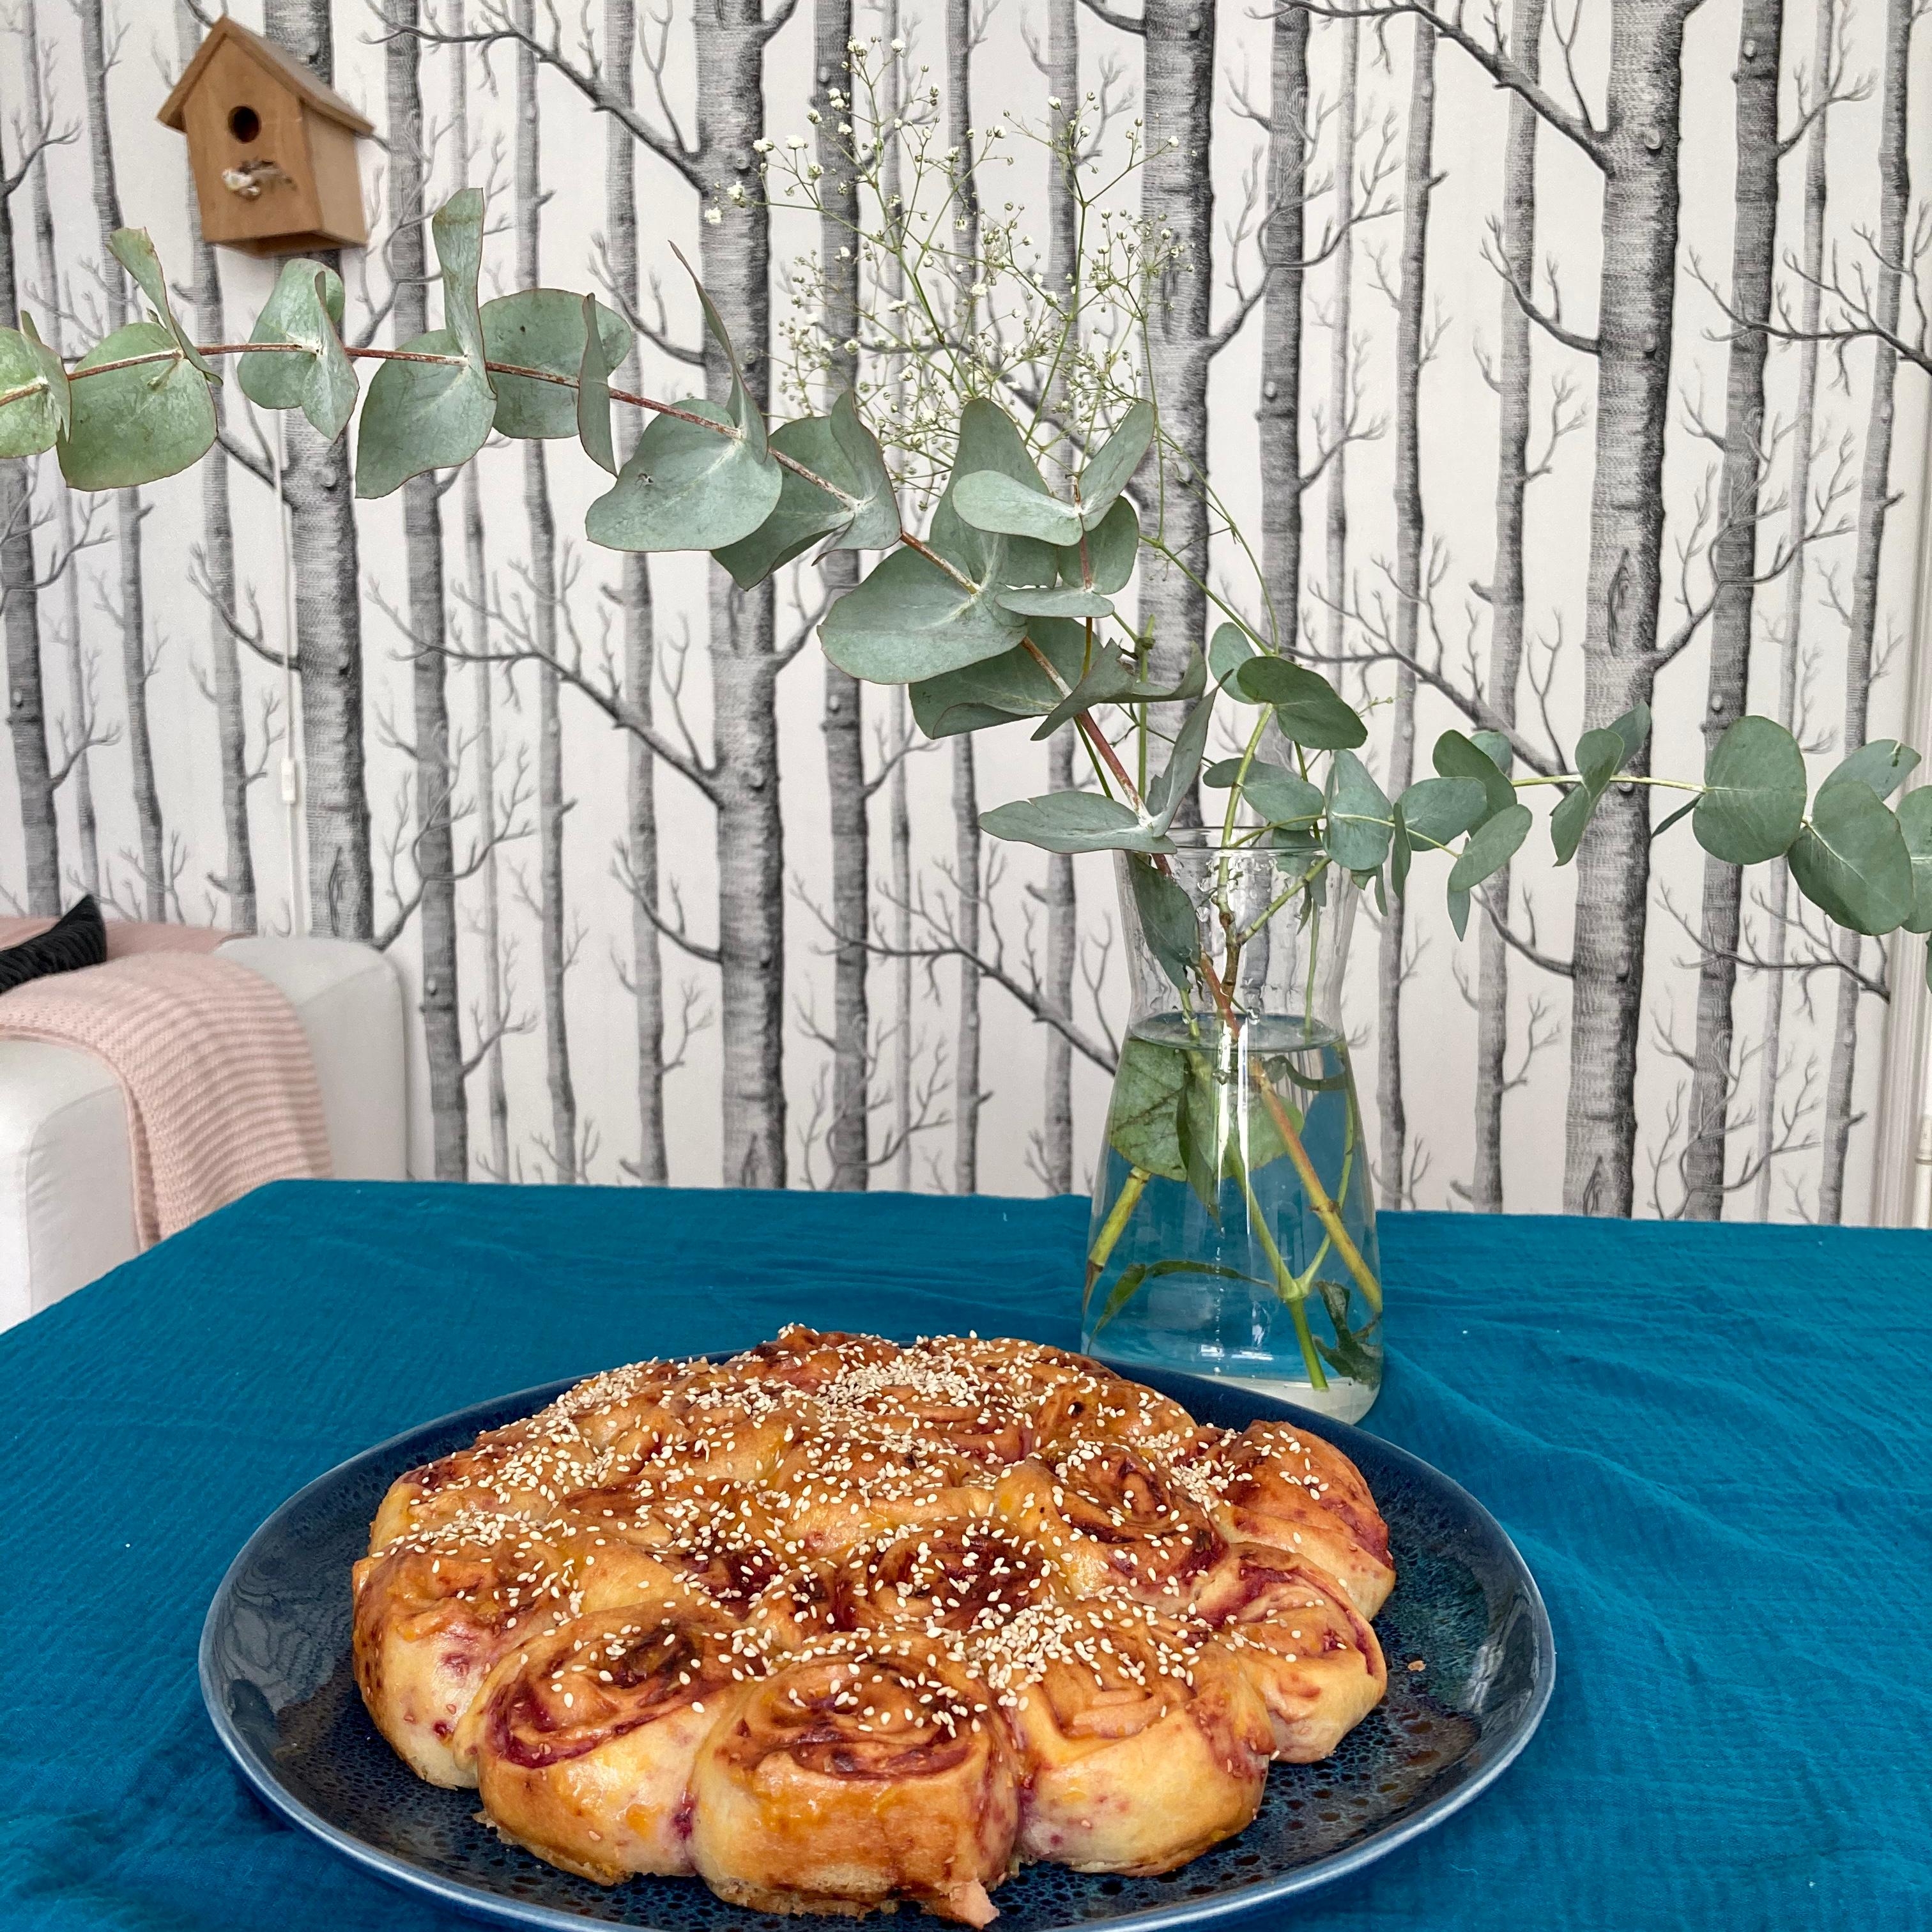 Sonntag, gleich wird der Kuchen nach unten in den Garten getragen 
#sonntagskuchen #tischdeko #flowers #livingroom